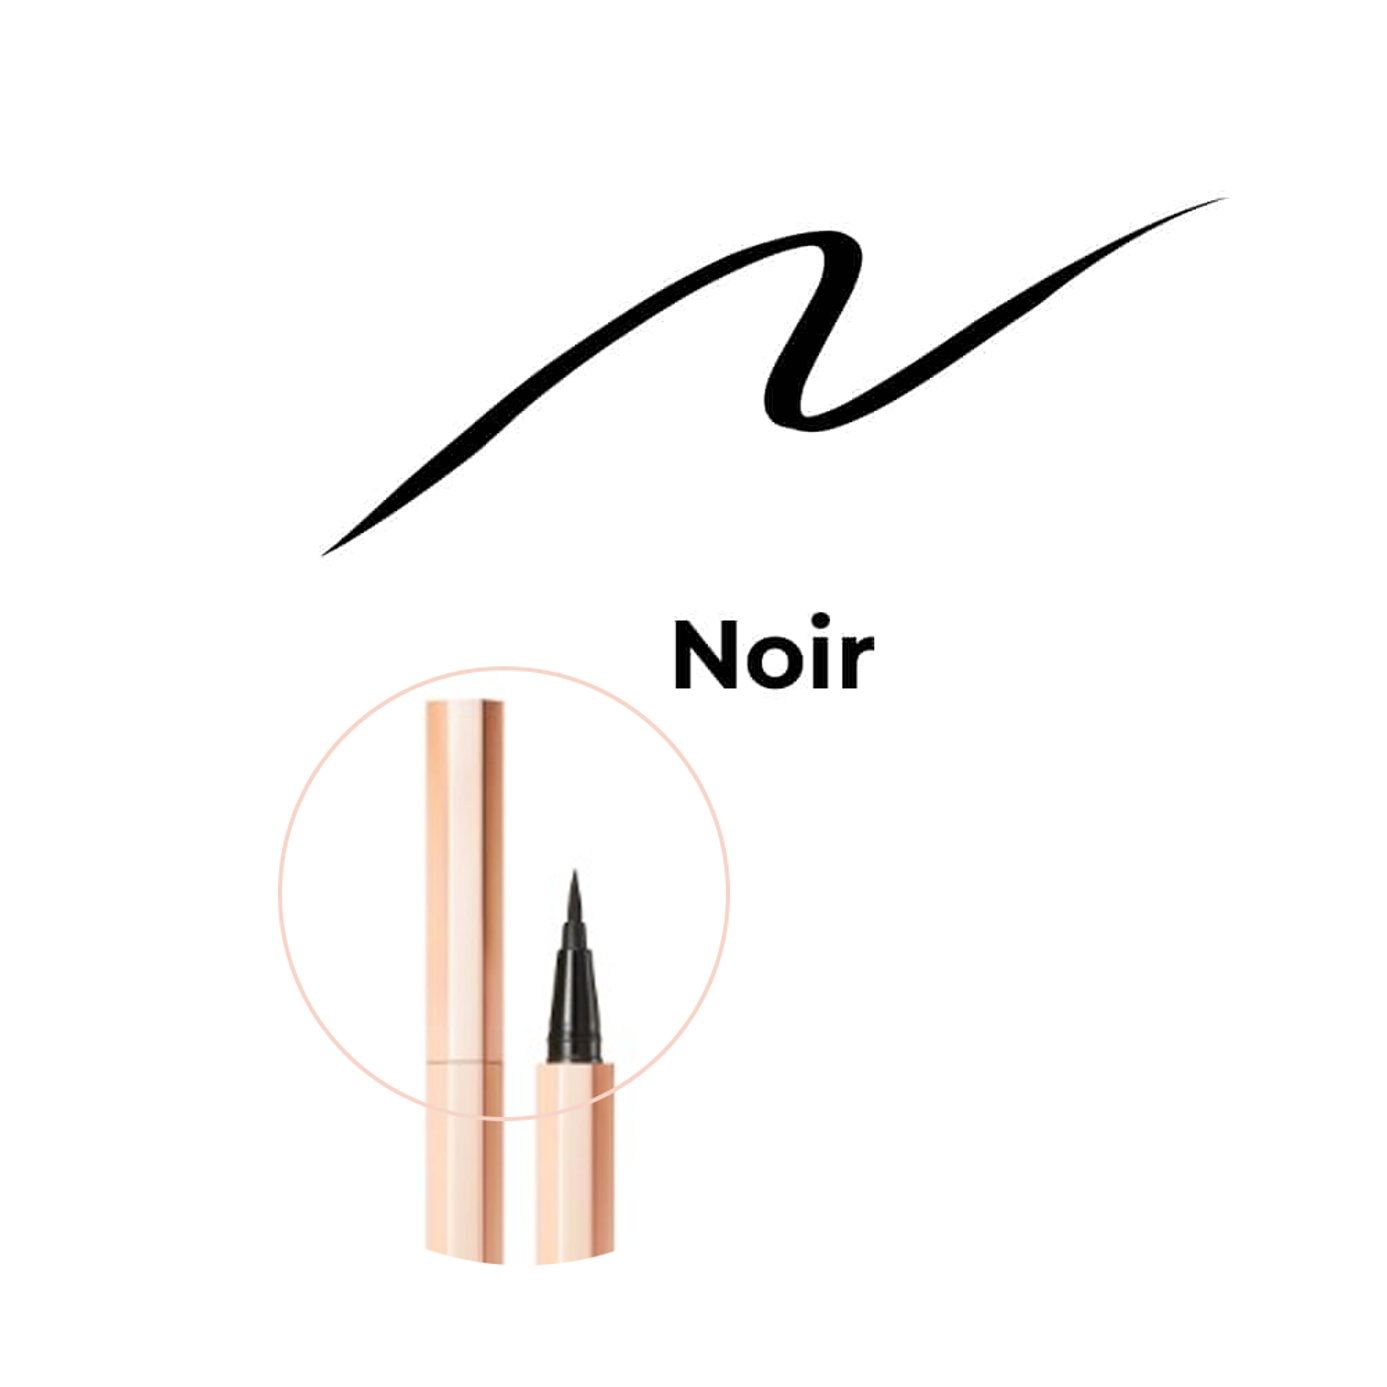 Buy Waterproof Eyeliner Pen Online at Offer Price - Iba Cosmetics